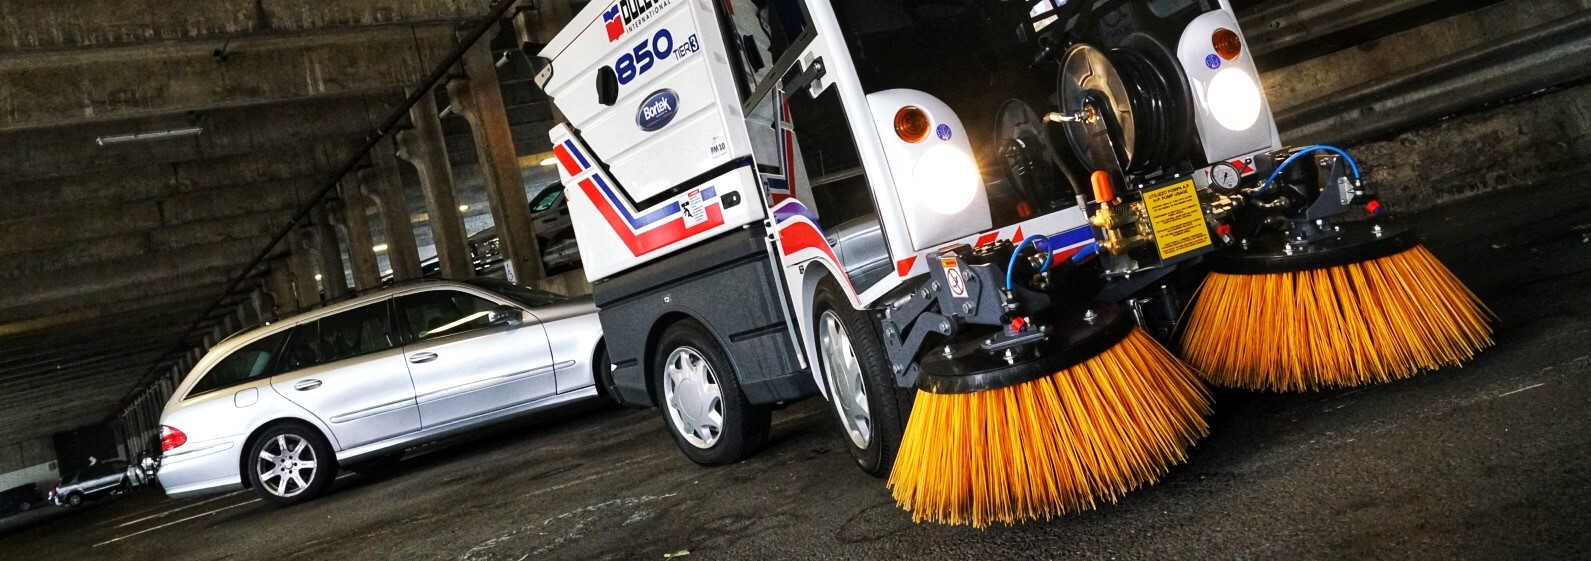 Dulevo 850 Mini Sweeper- Parking Garage Sweeper